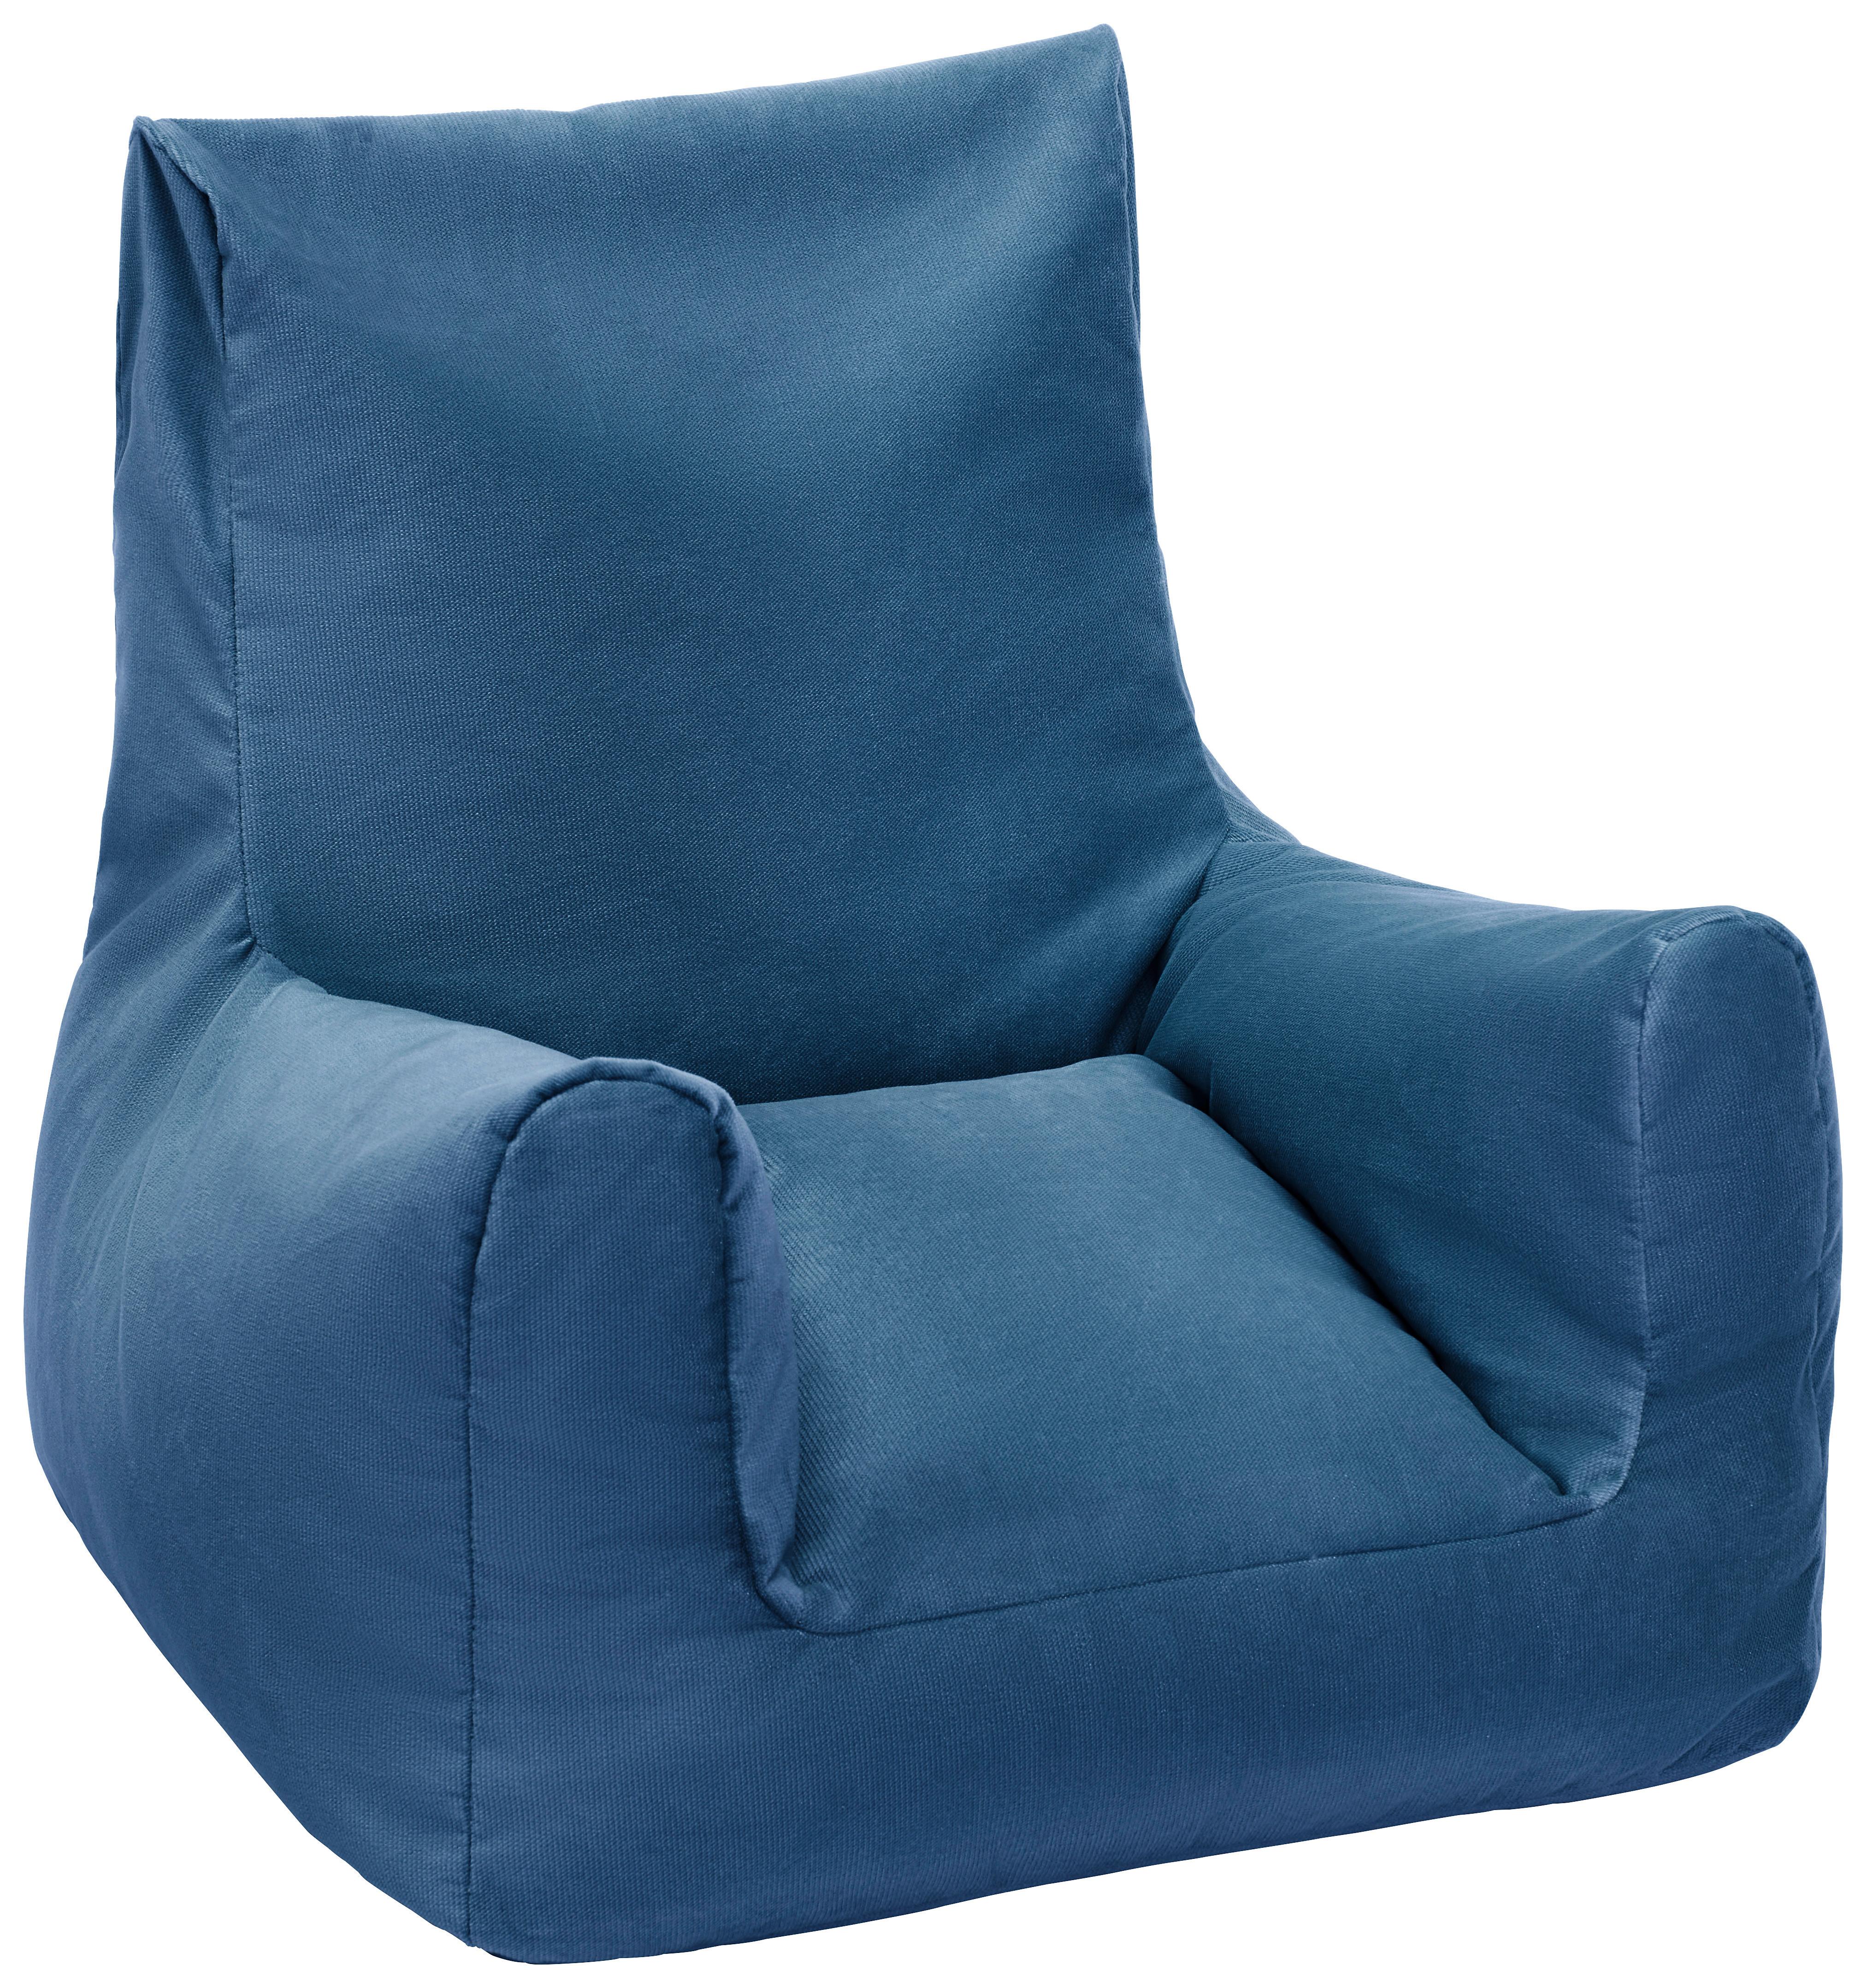 Sedací Vak Modrý - modrá, textil (70/55/70cm) - Modern Living